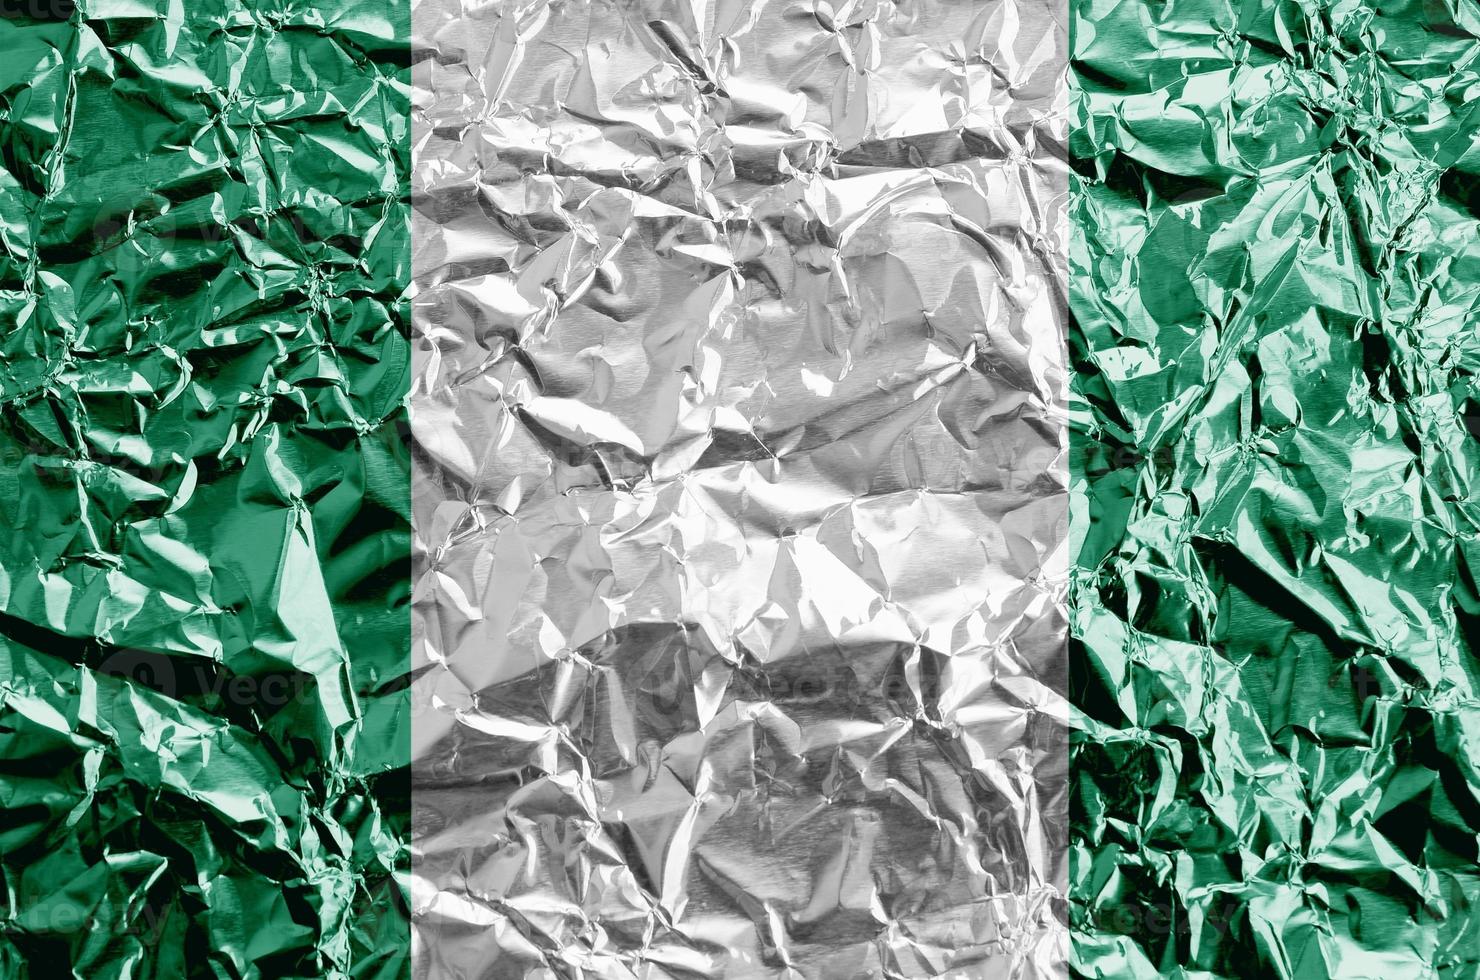 nigeria flagga avbildad i måla färger på skinande skrynkliga aluminium folie närbild. texturerad baner på grov bakgrund foto